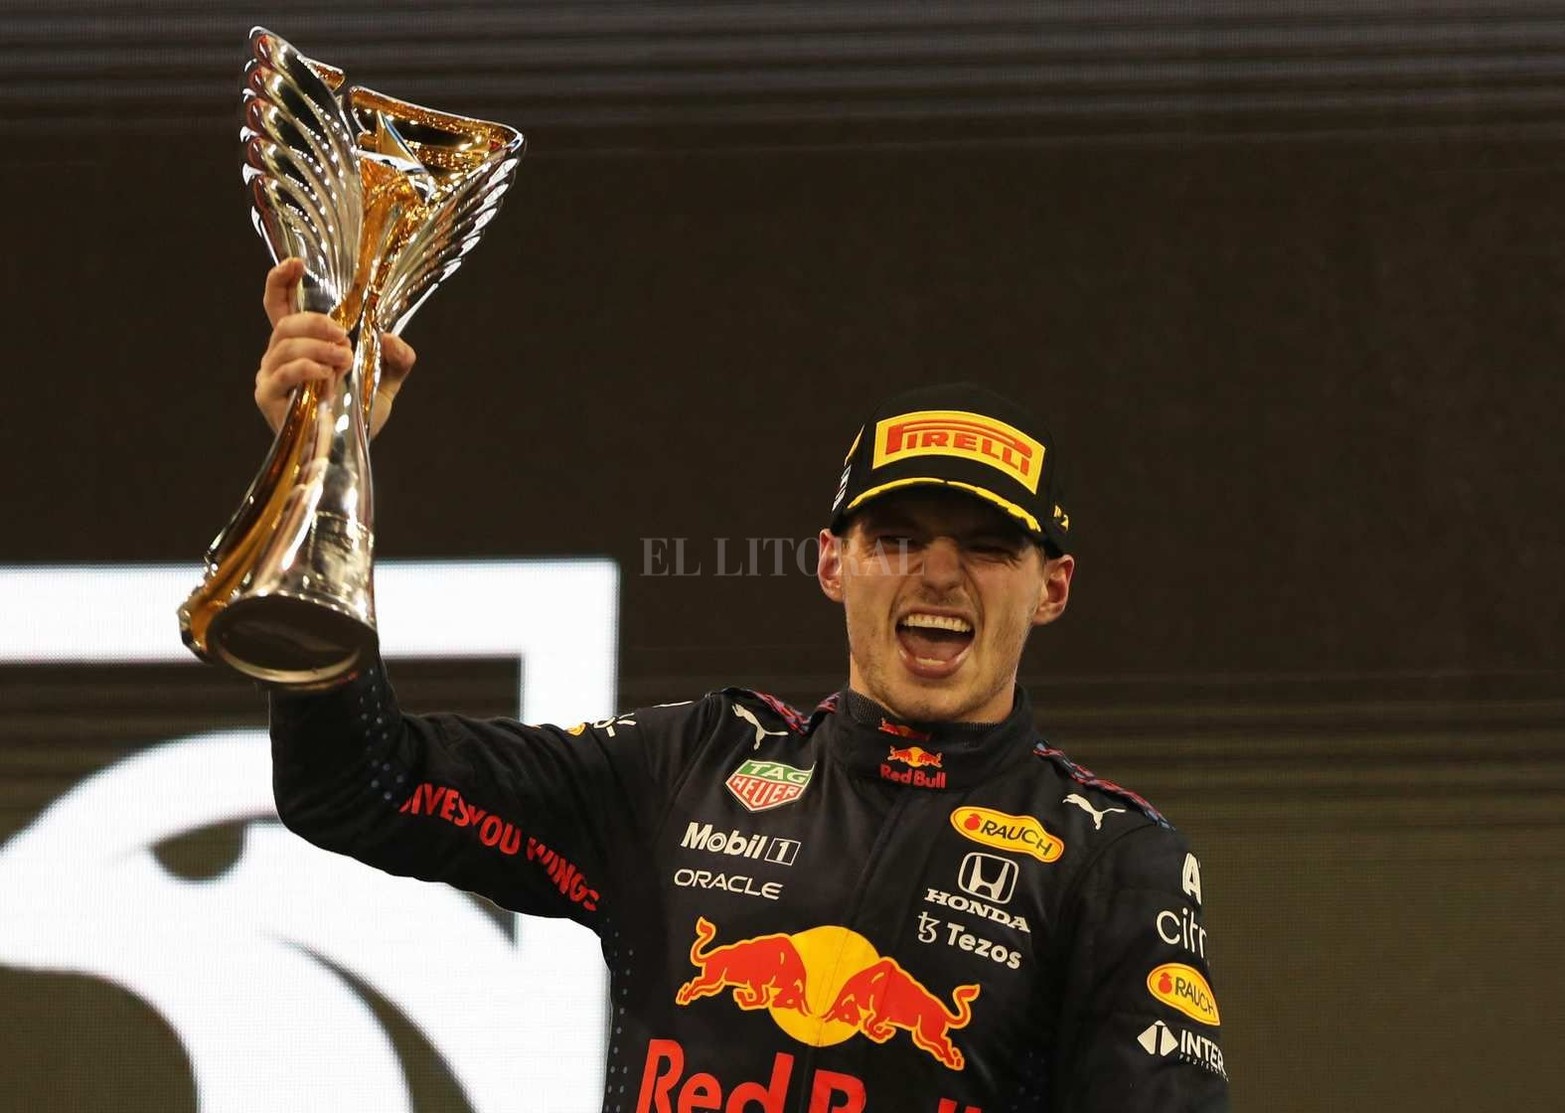 El neerlandés Max Verstappen (Red Bull) se consagró como nuevo campeón de la Fórmula 1, al imponerse sobre el británico Lewis Hamilton (Mercedes) en la última vuelta del Gran Premio de Abu Dhabi.